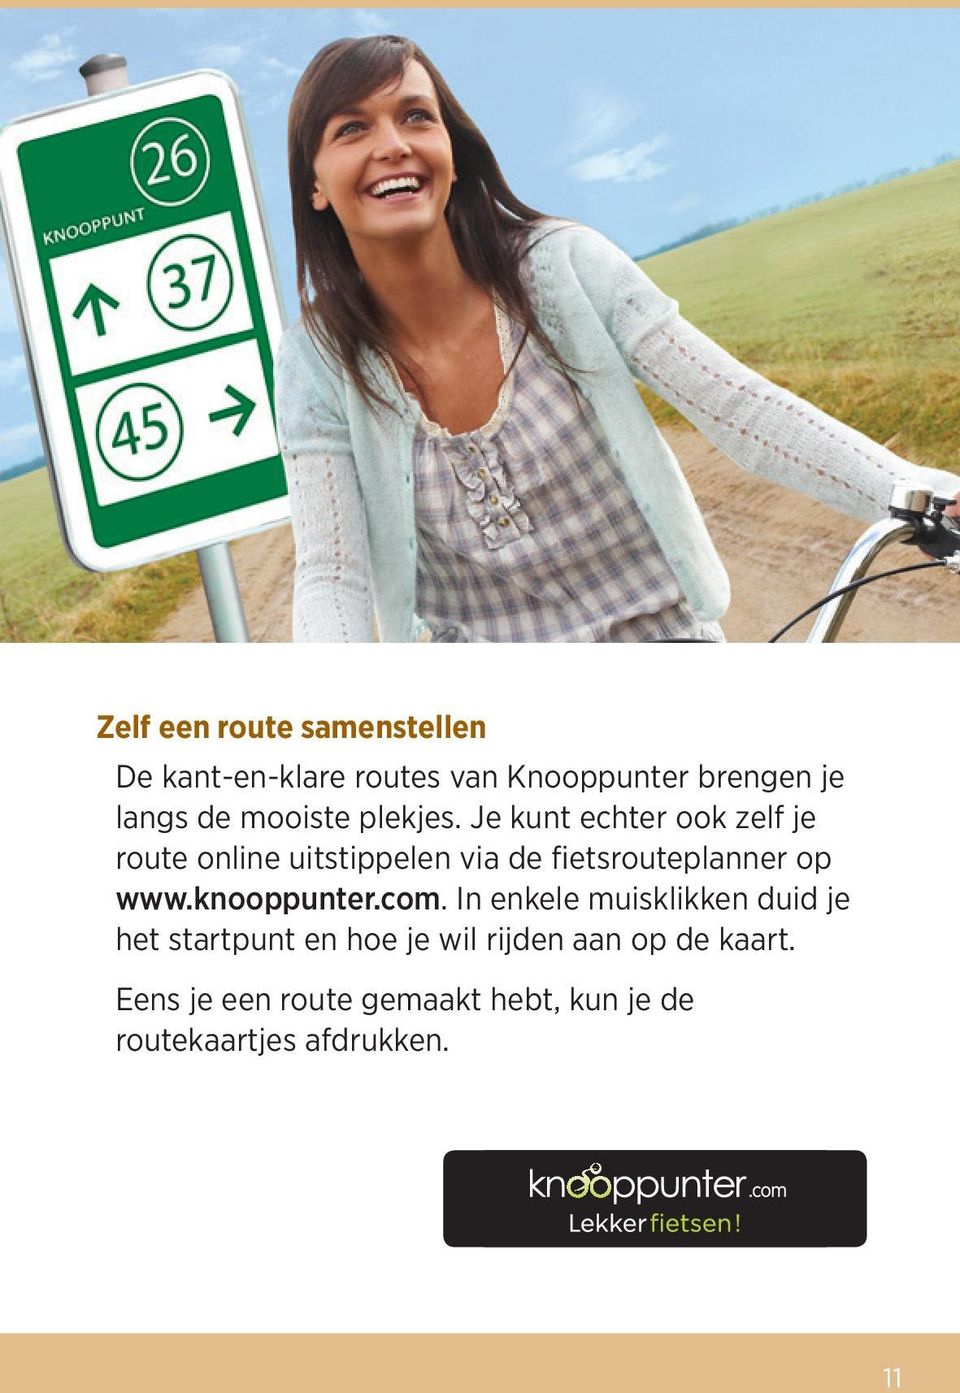 Je kunt echter ook zelf je route online uitstippelen via de fietsrouteplanner op www.